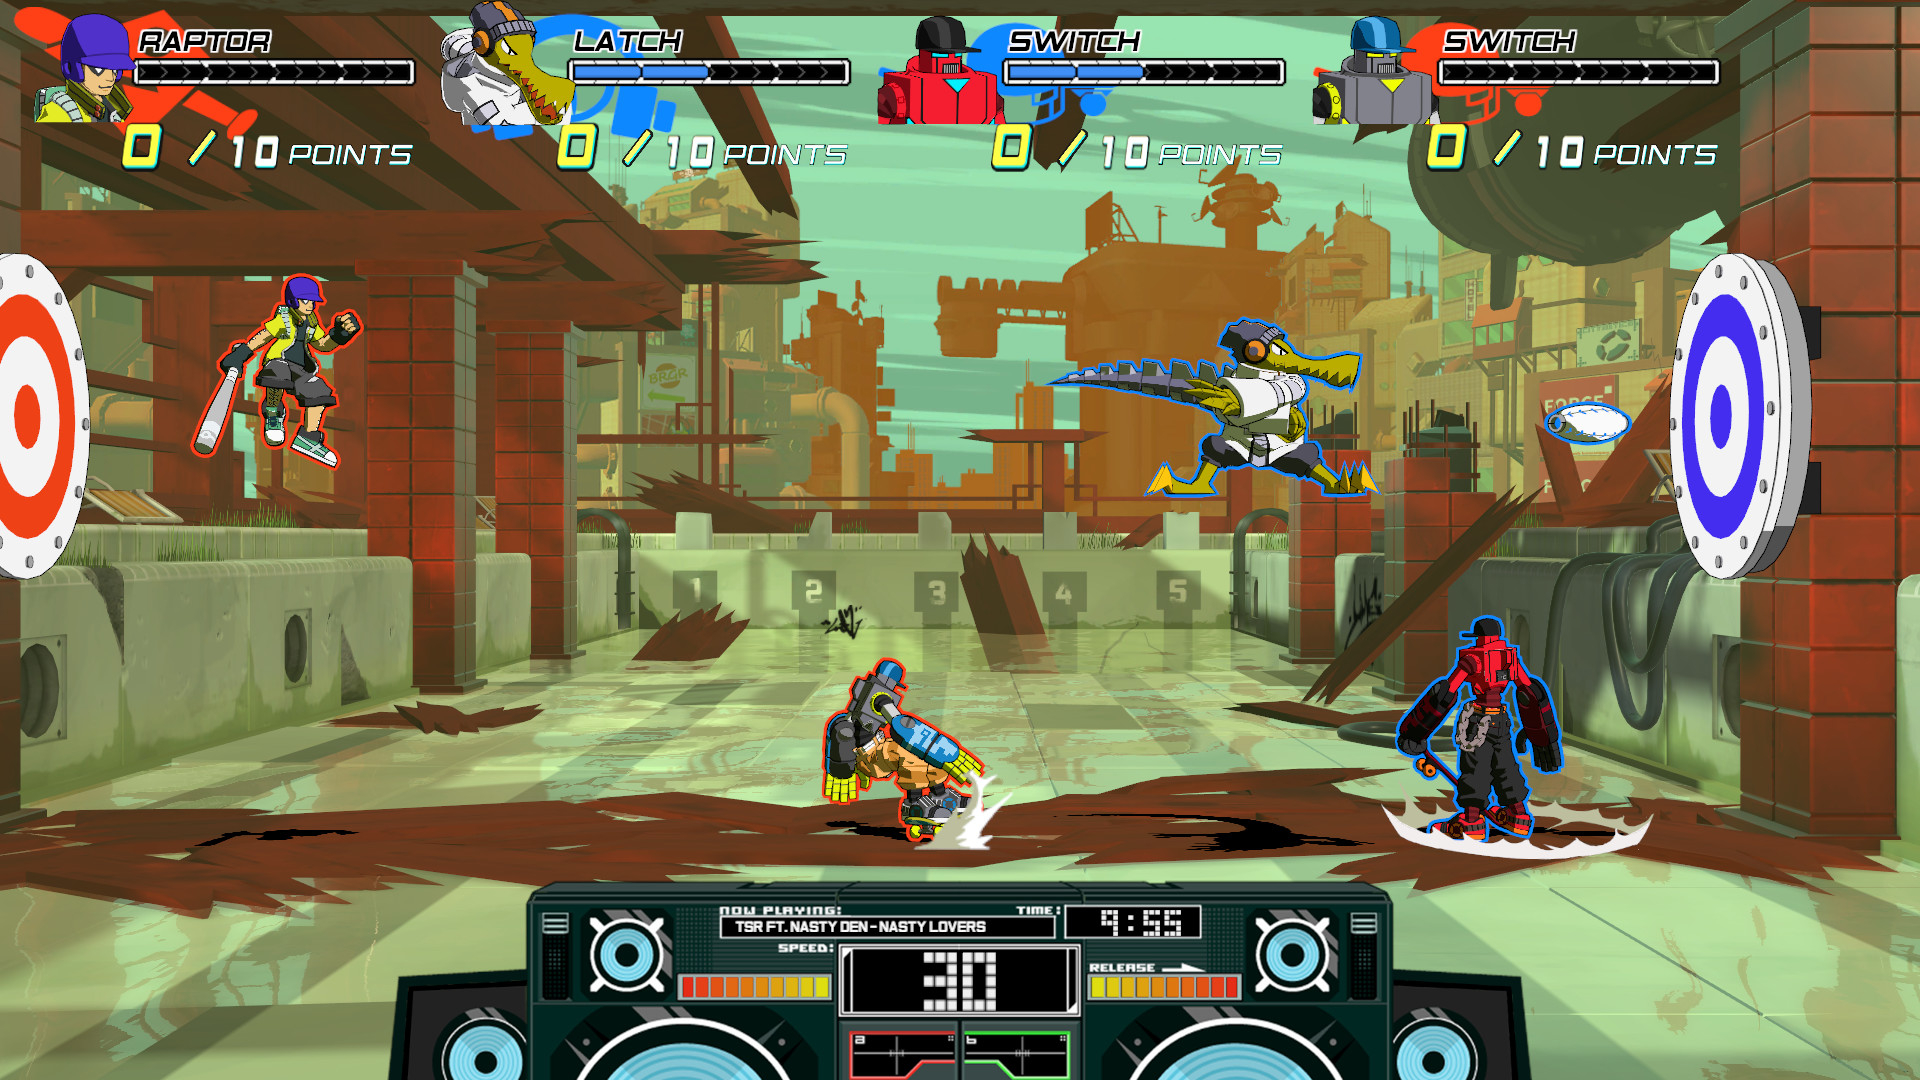 Otra captura caotica del videojuego donde 2 equipos se enfrentan